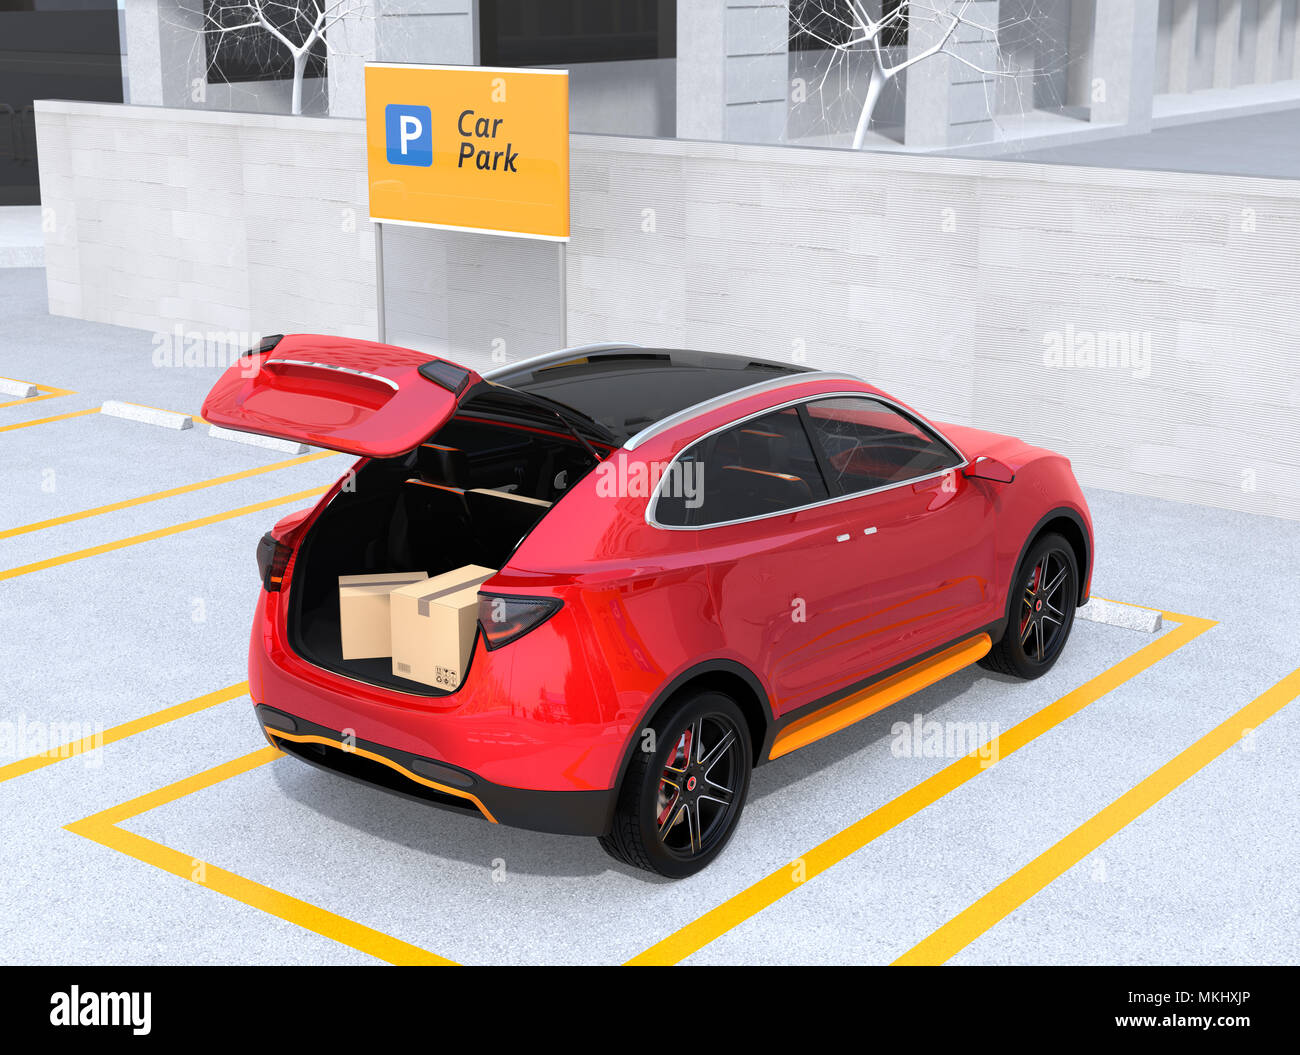 Ansicht der Rückseite des roten Auto Trunk mit Paket Boxen innen geöffnet.  Konzept für den Kofferraum. 3D-Bild Stockfotografie - Alamy